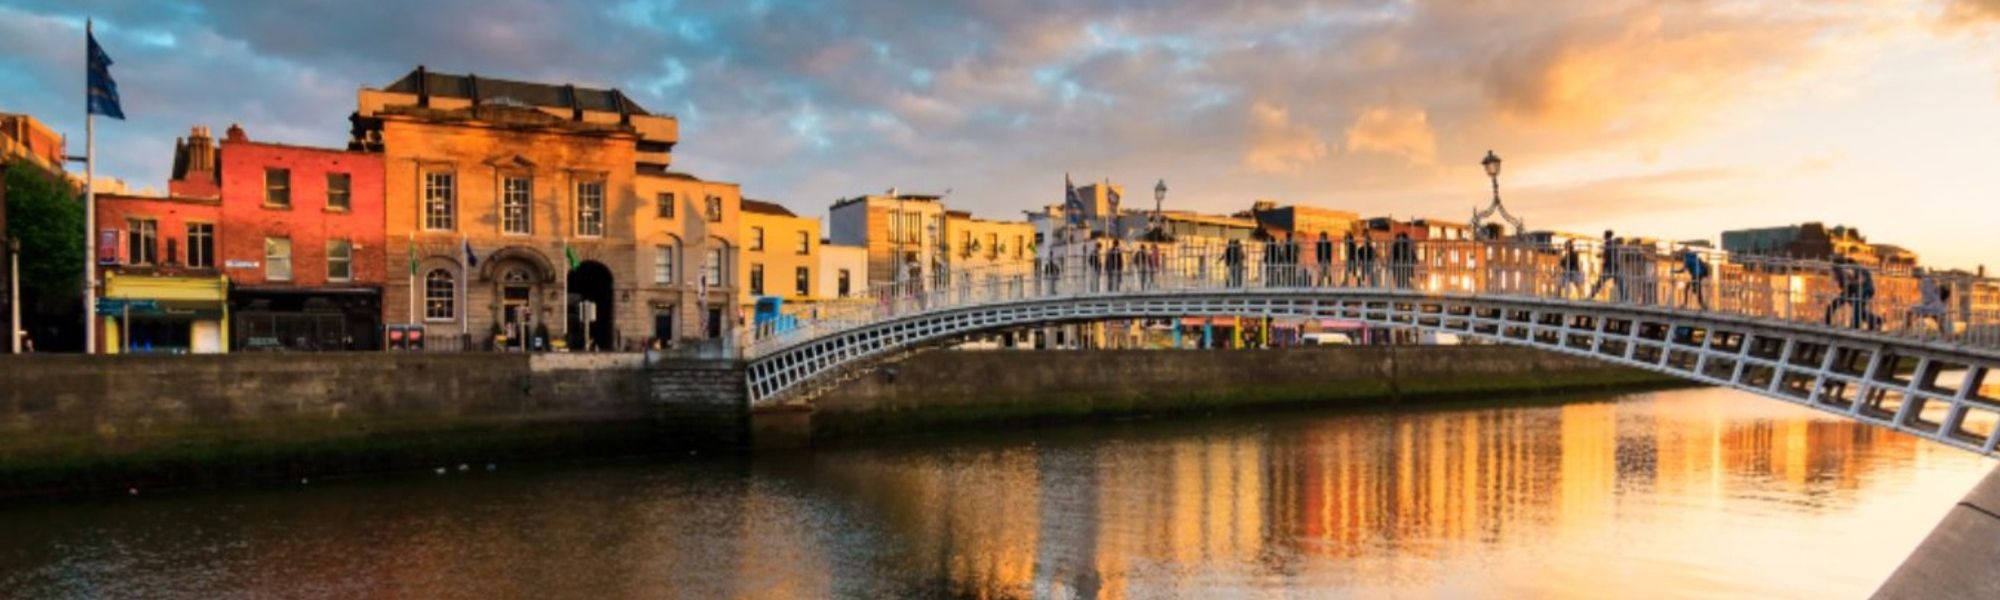 Dublin Banner Image